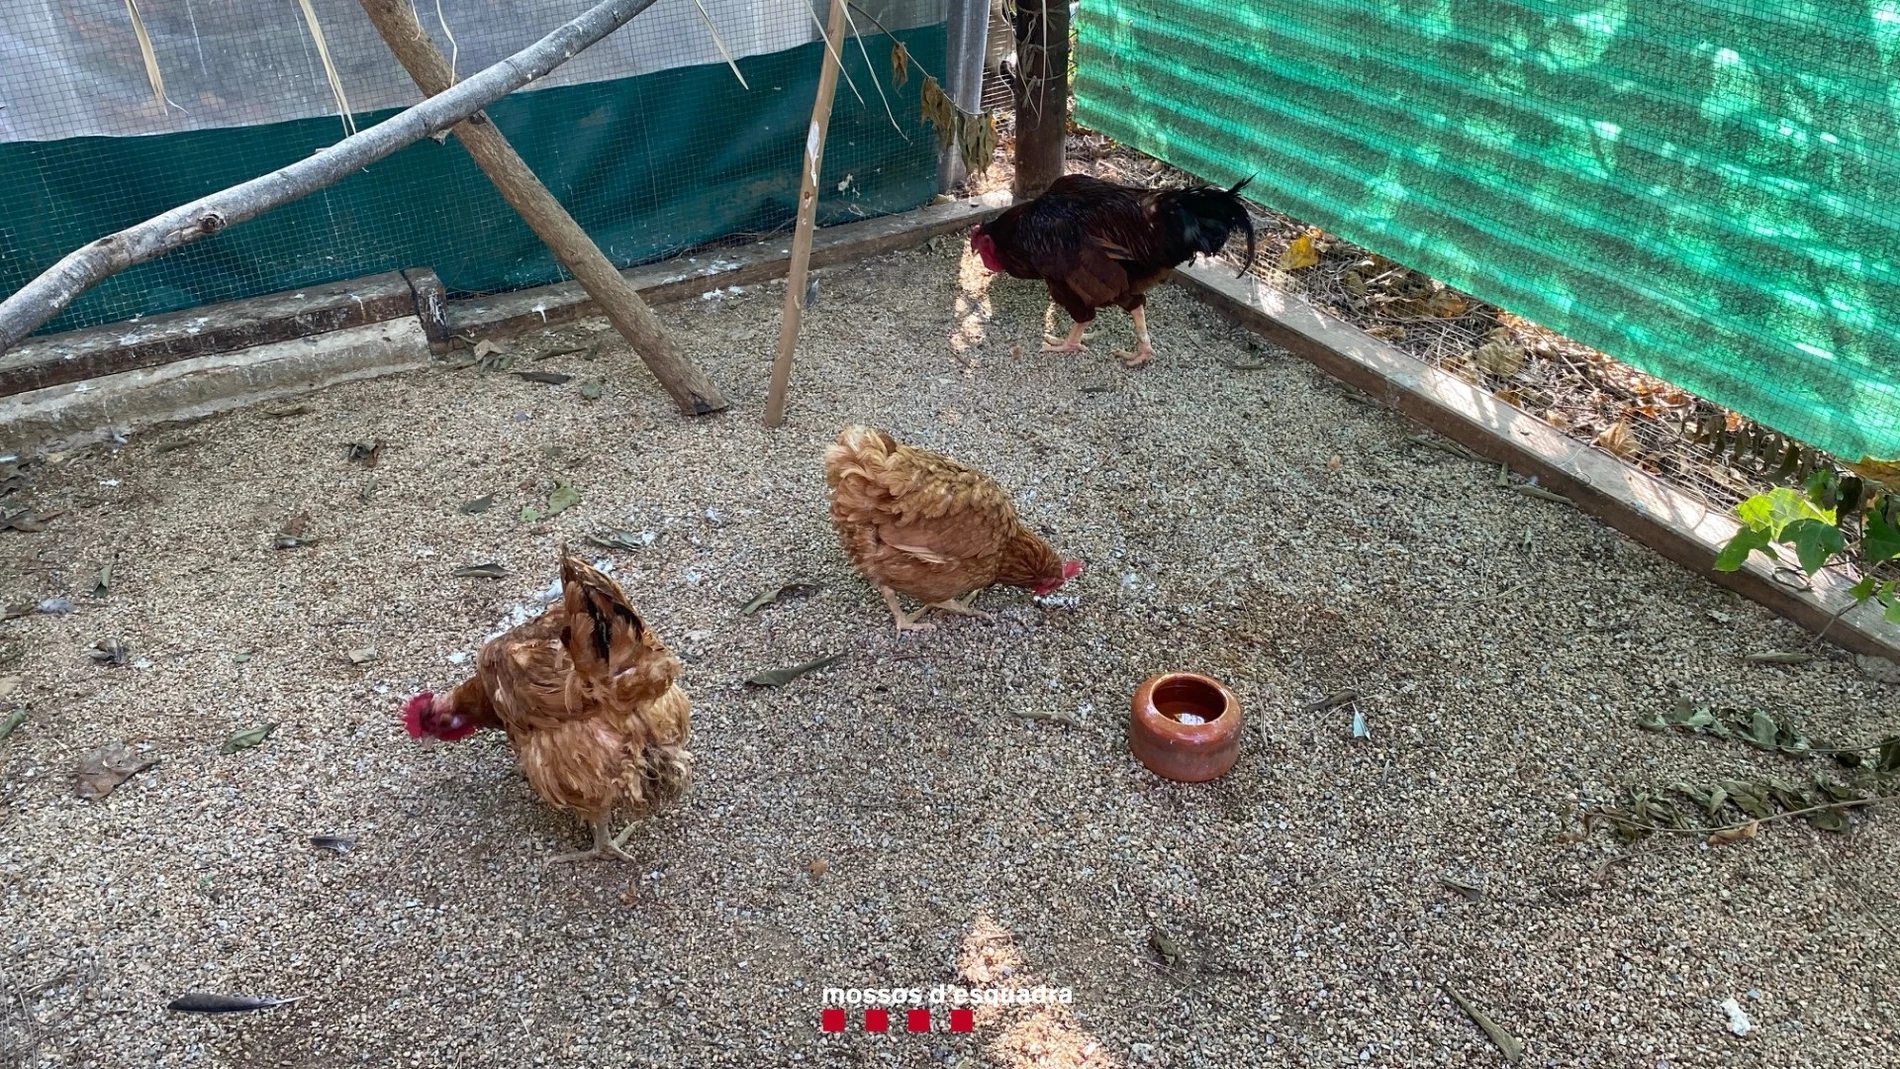 Imagen de las gallinas intervenidas por los Mossos d'EsquadraMOSSOS D'ESQUADRA